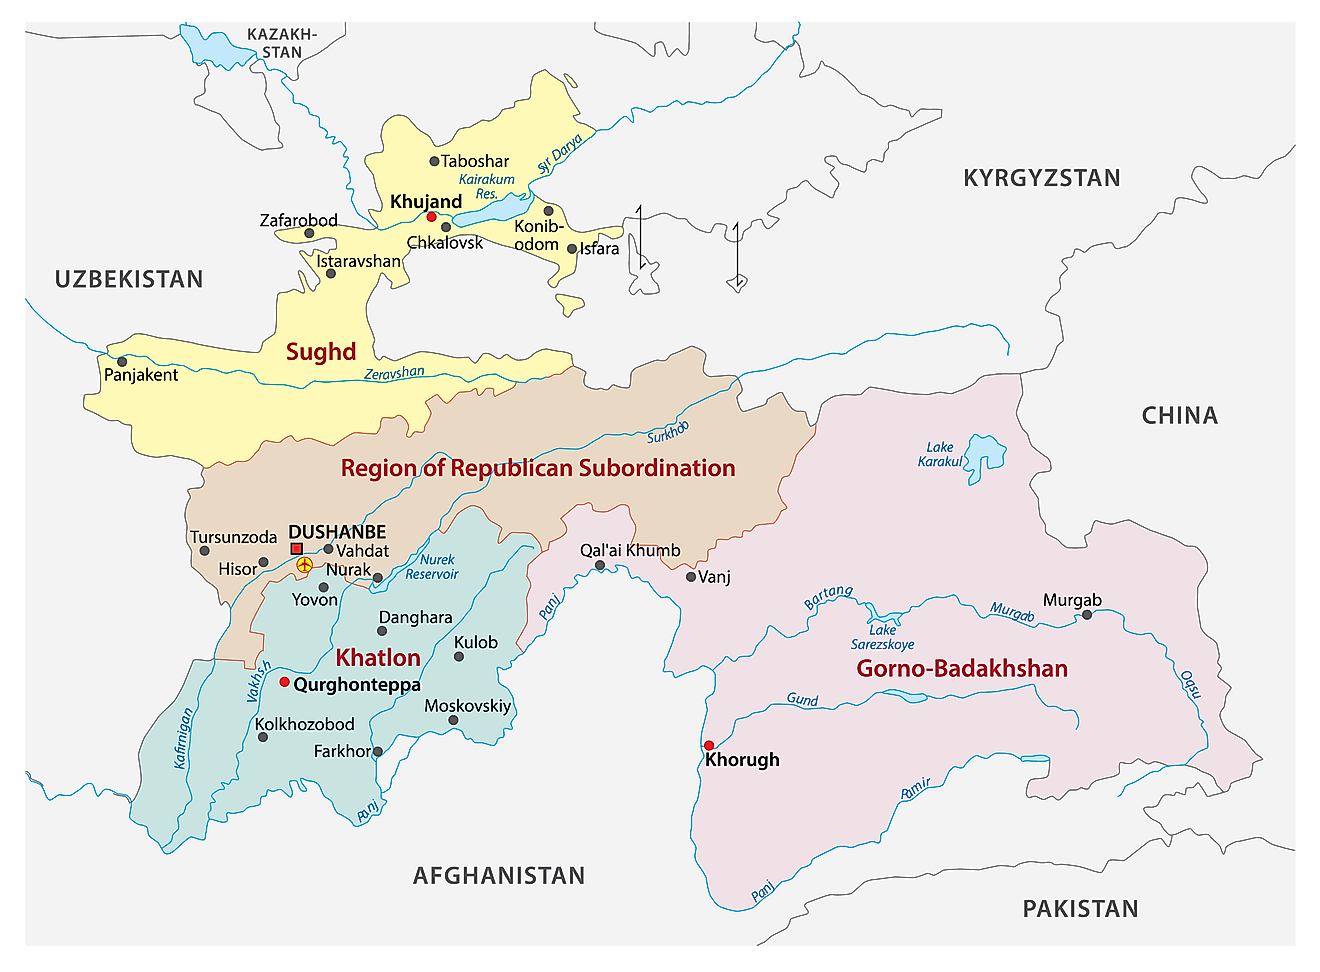 El mapa político de Tayikistán que muestra sus cuatro provincias, sus capitales y la ciudad capital de Dushanbe.